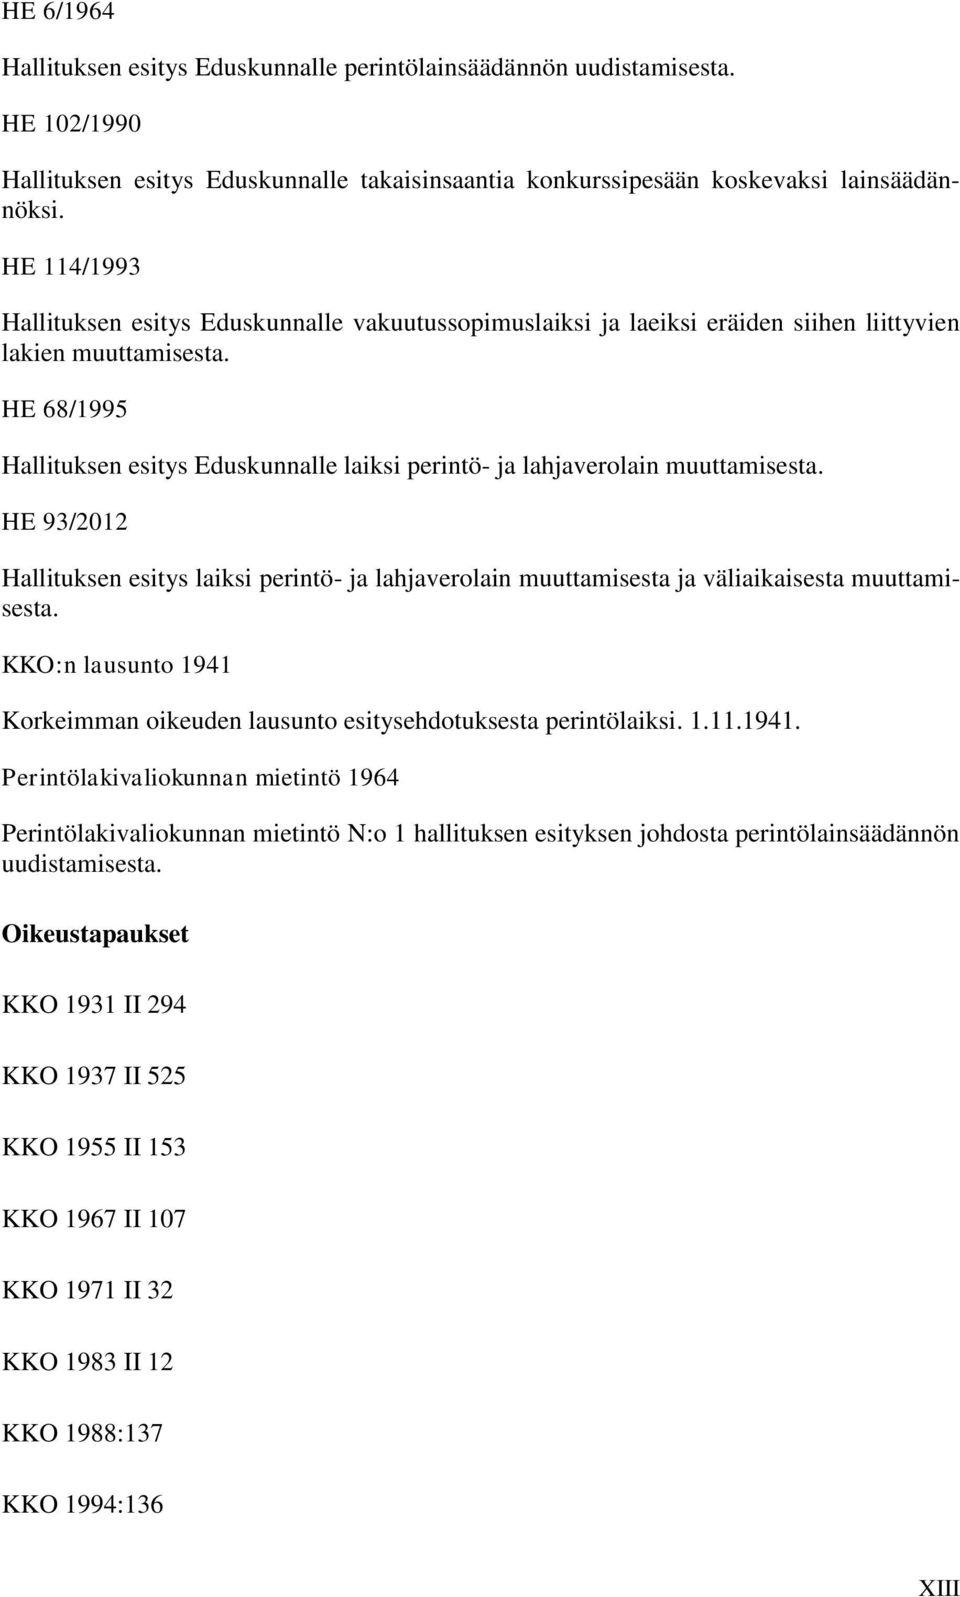 HE 68/1995 Hallituksen esitys Eduskunnalle laiksi perintö- ja lahjaverolain muuttamisesta. HE 93/2012 Hallituksen esitys laiksi perintö- ja lahjaverolain muuttamisesta ja väliaikaisesta muuttamisesta.